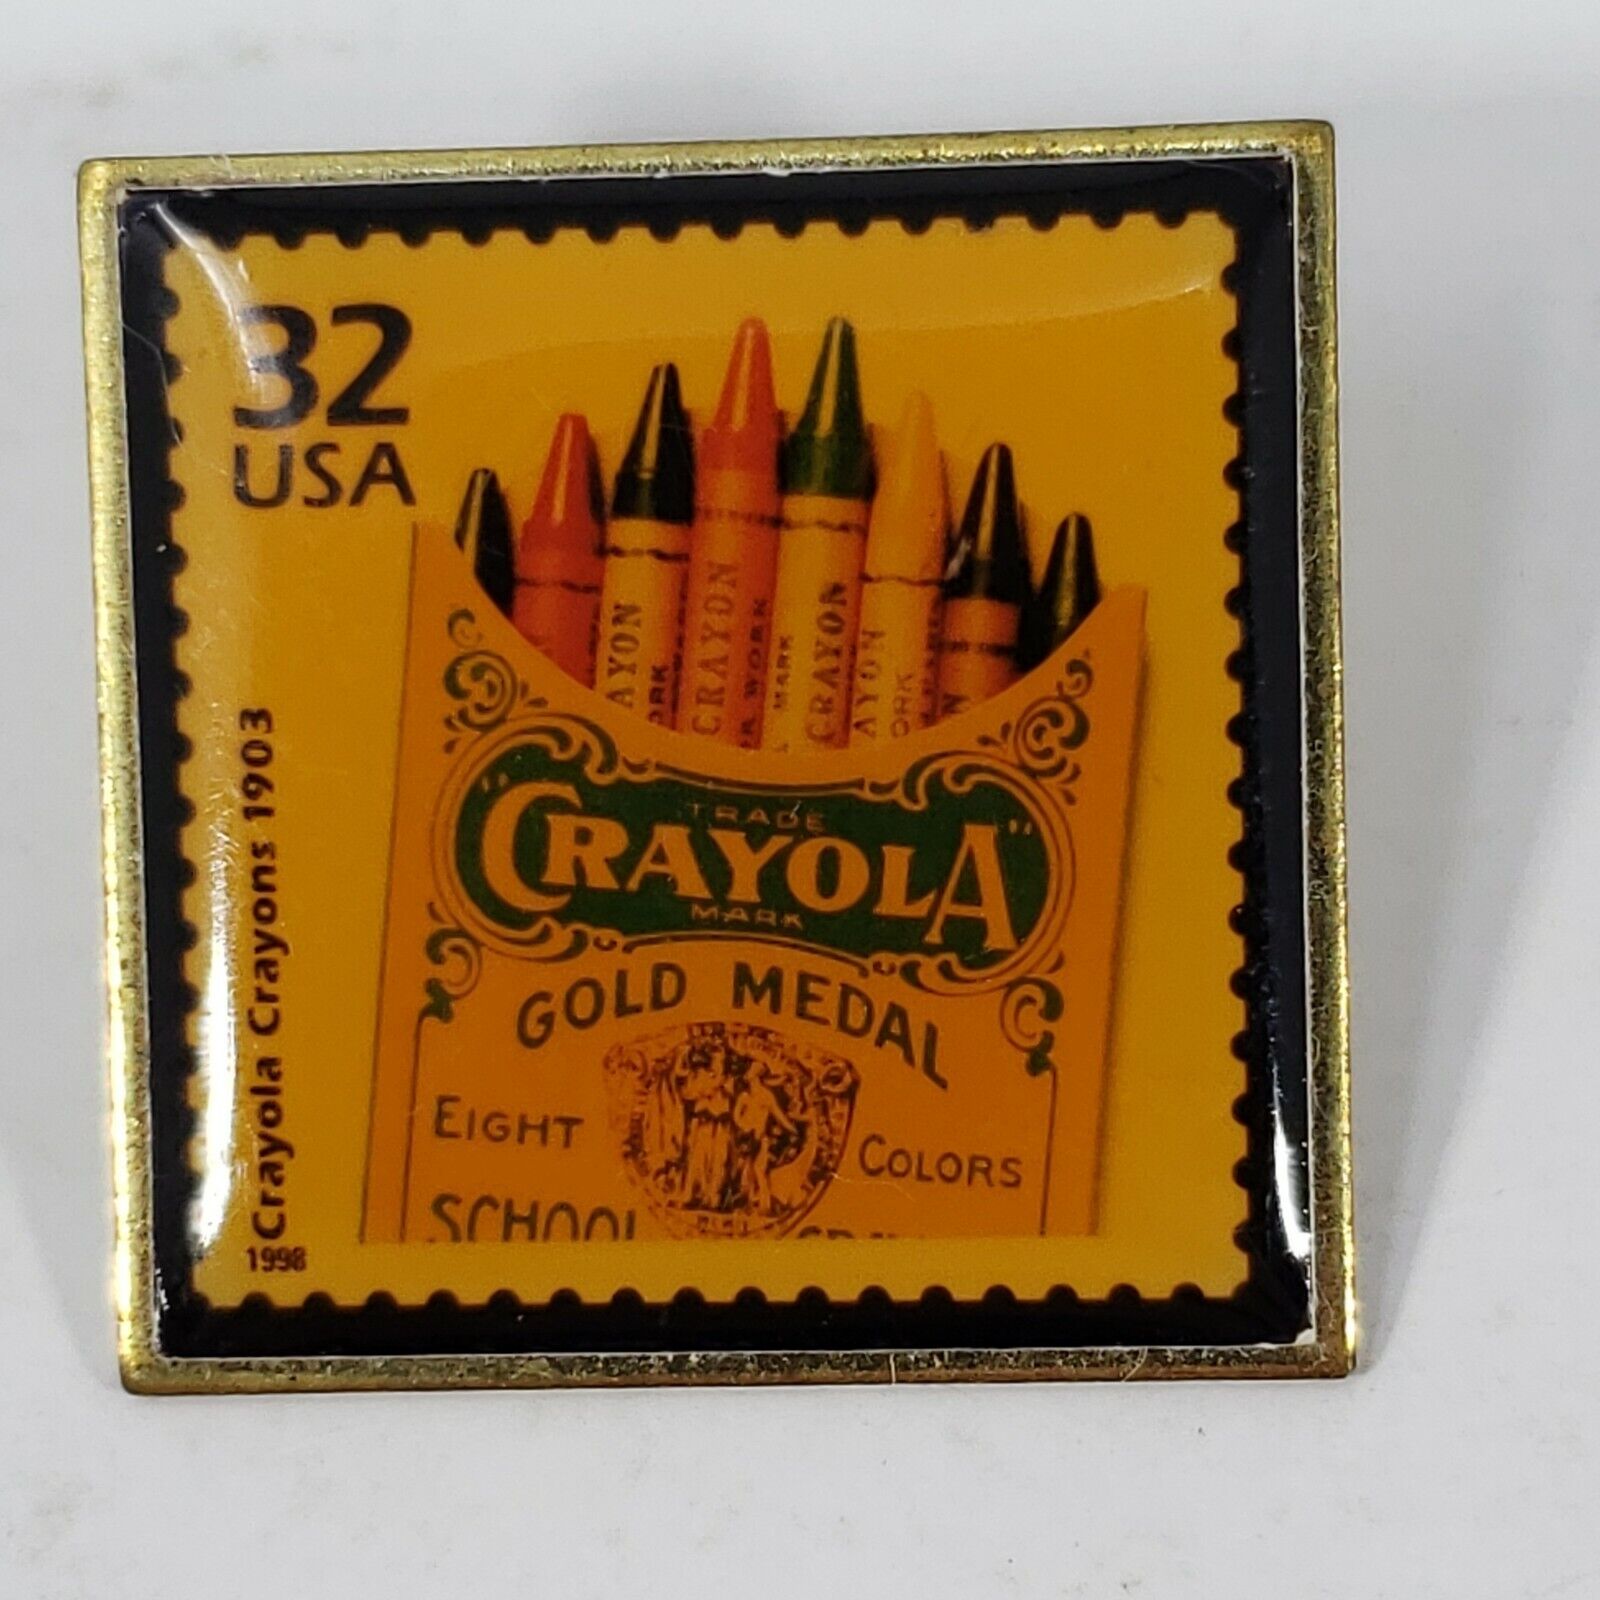 Crayola Crayons 32 cent USA Postage Stamp Pinback Pin Vintage 1998 Metal Enamel